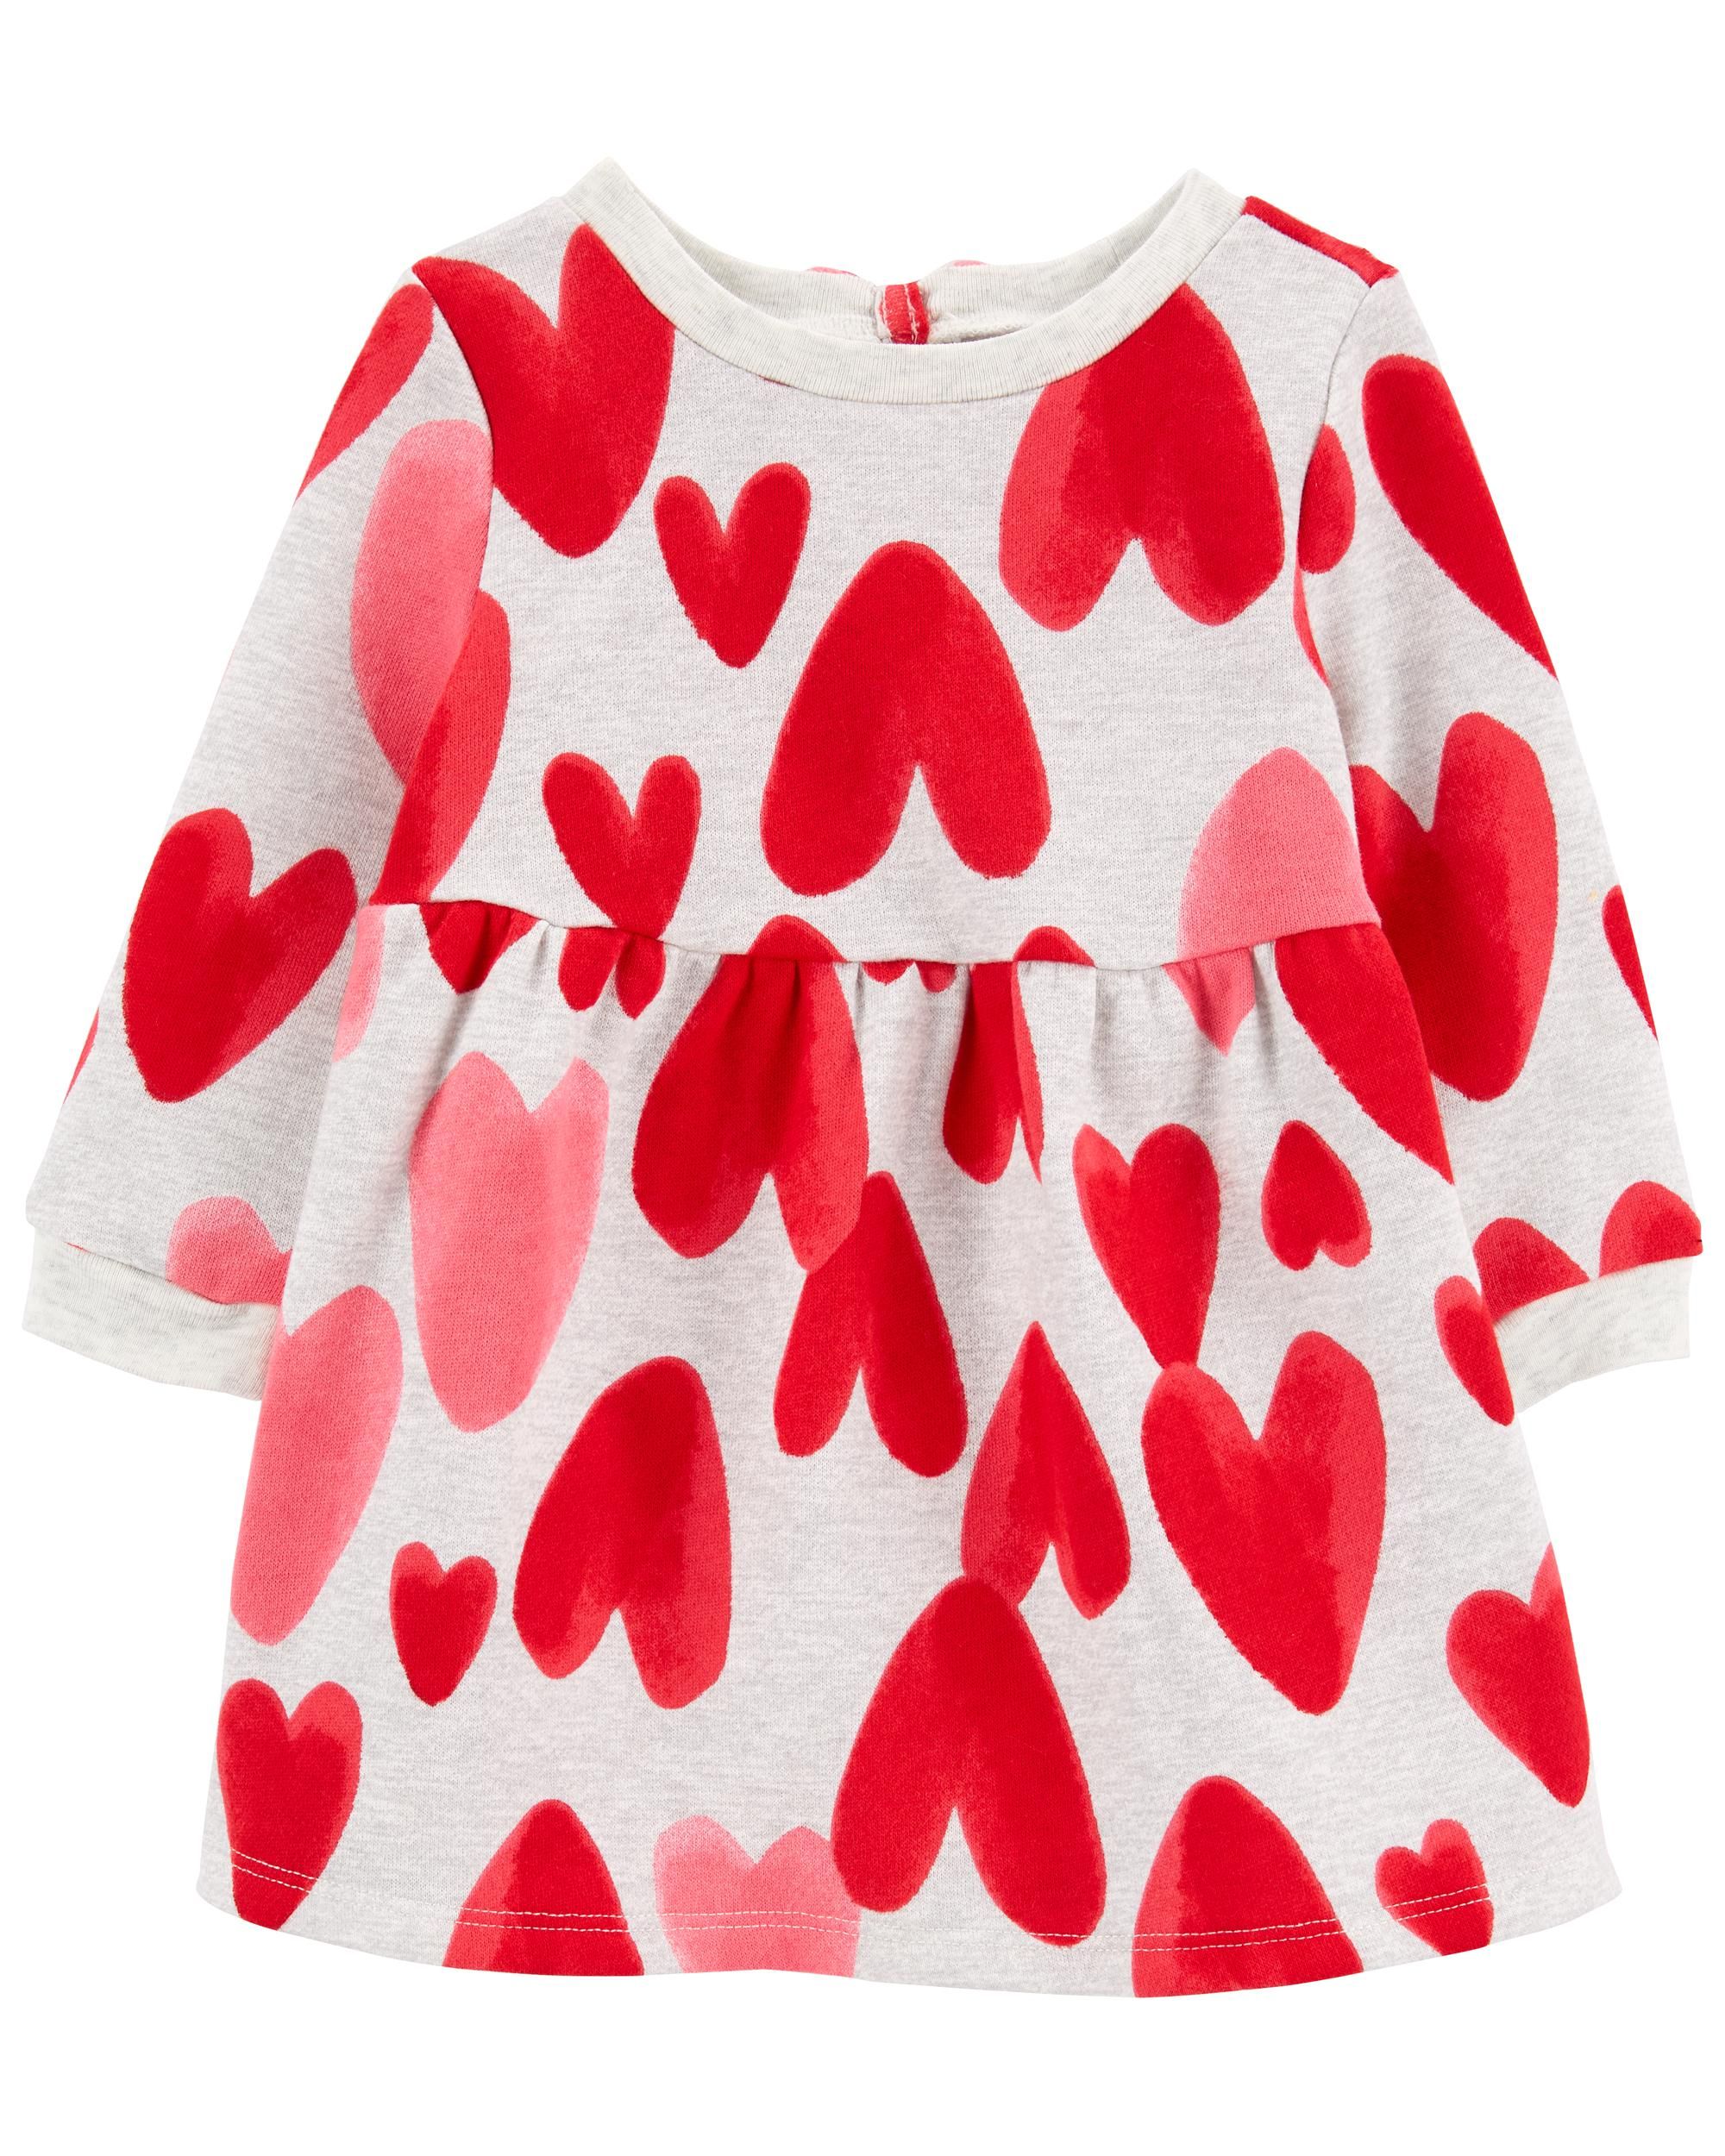 Baby Heart Fleece Dress | Carter's